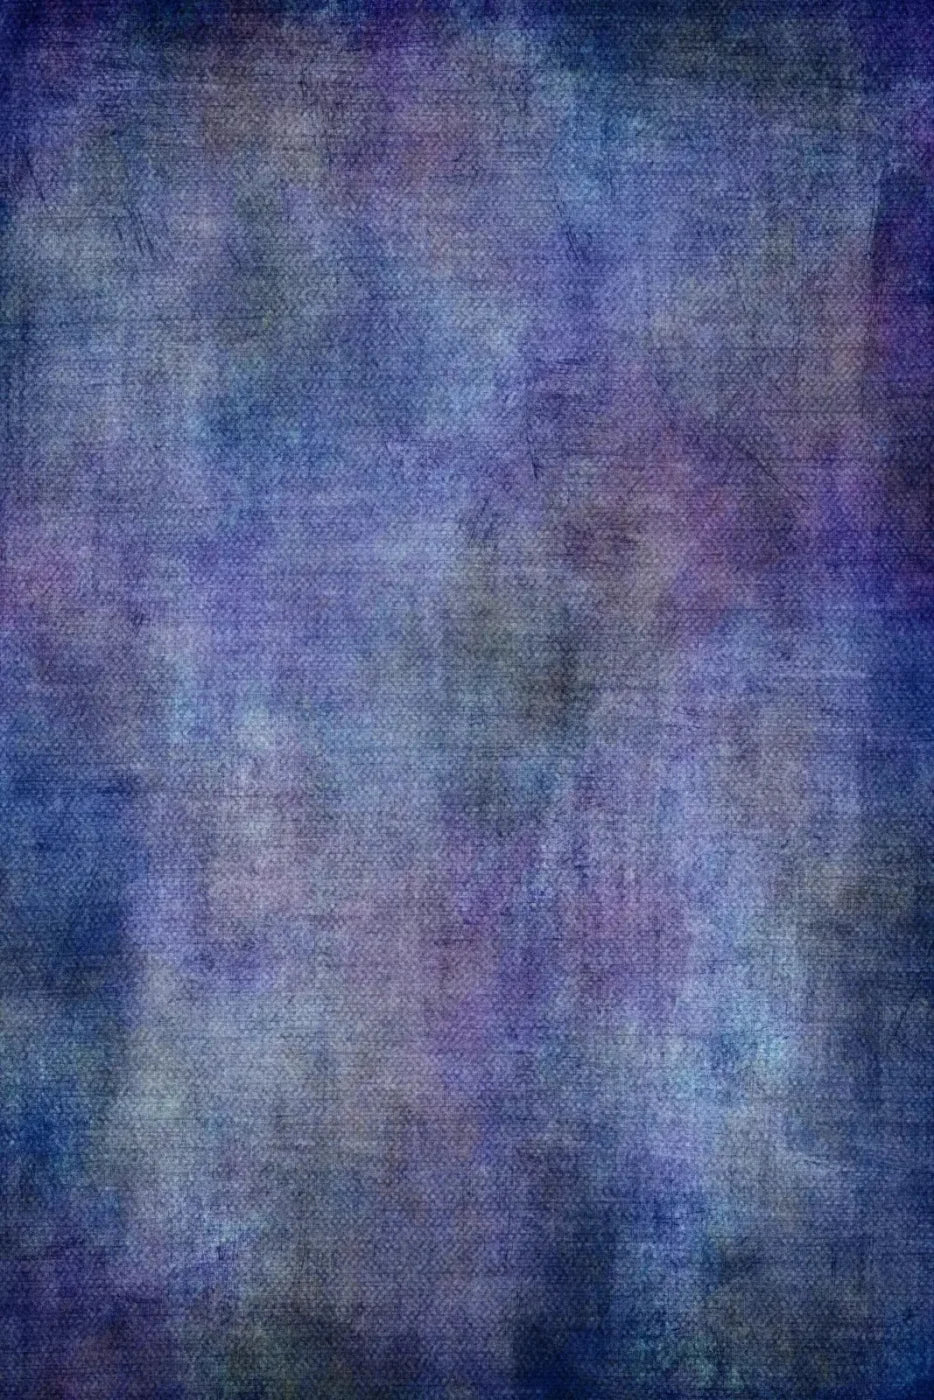 Blueberry Bliss 4X5 Rubbermat Floor ( 48 X 60 Inch ) Backdrop